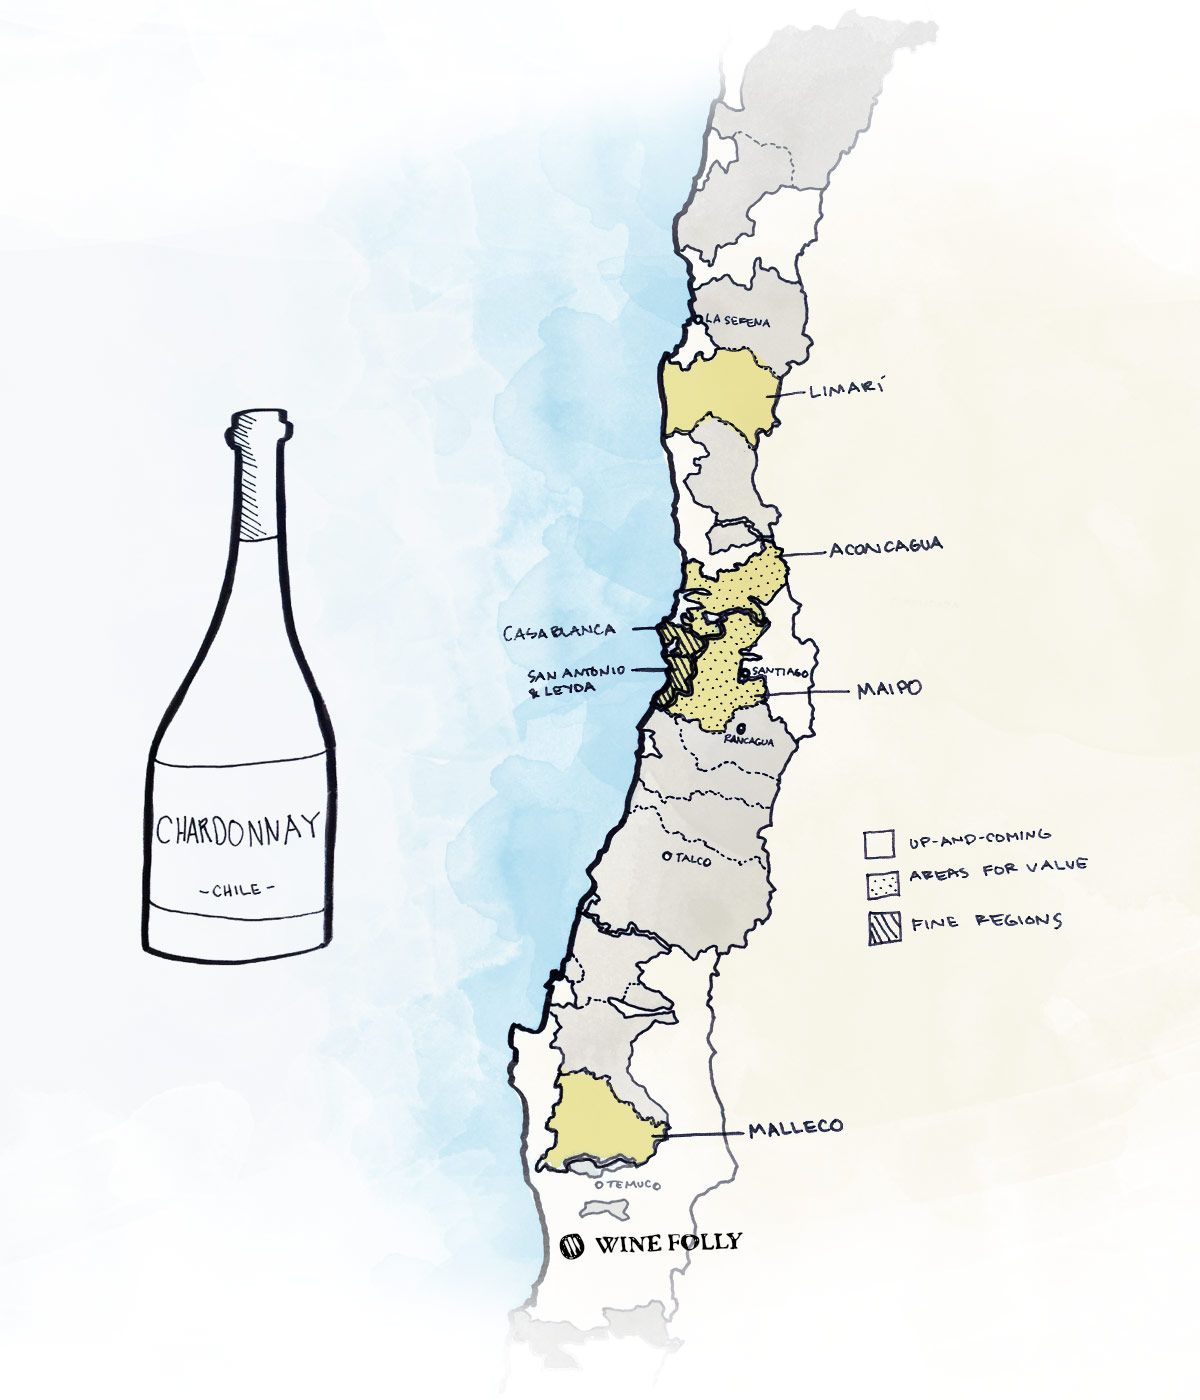 Najboljša vinska regija za iskanje čilskega chardonnaya